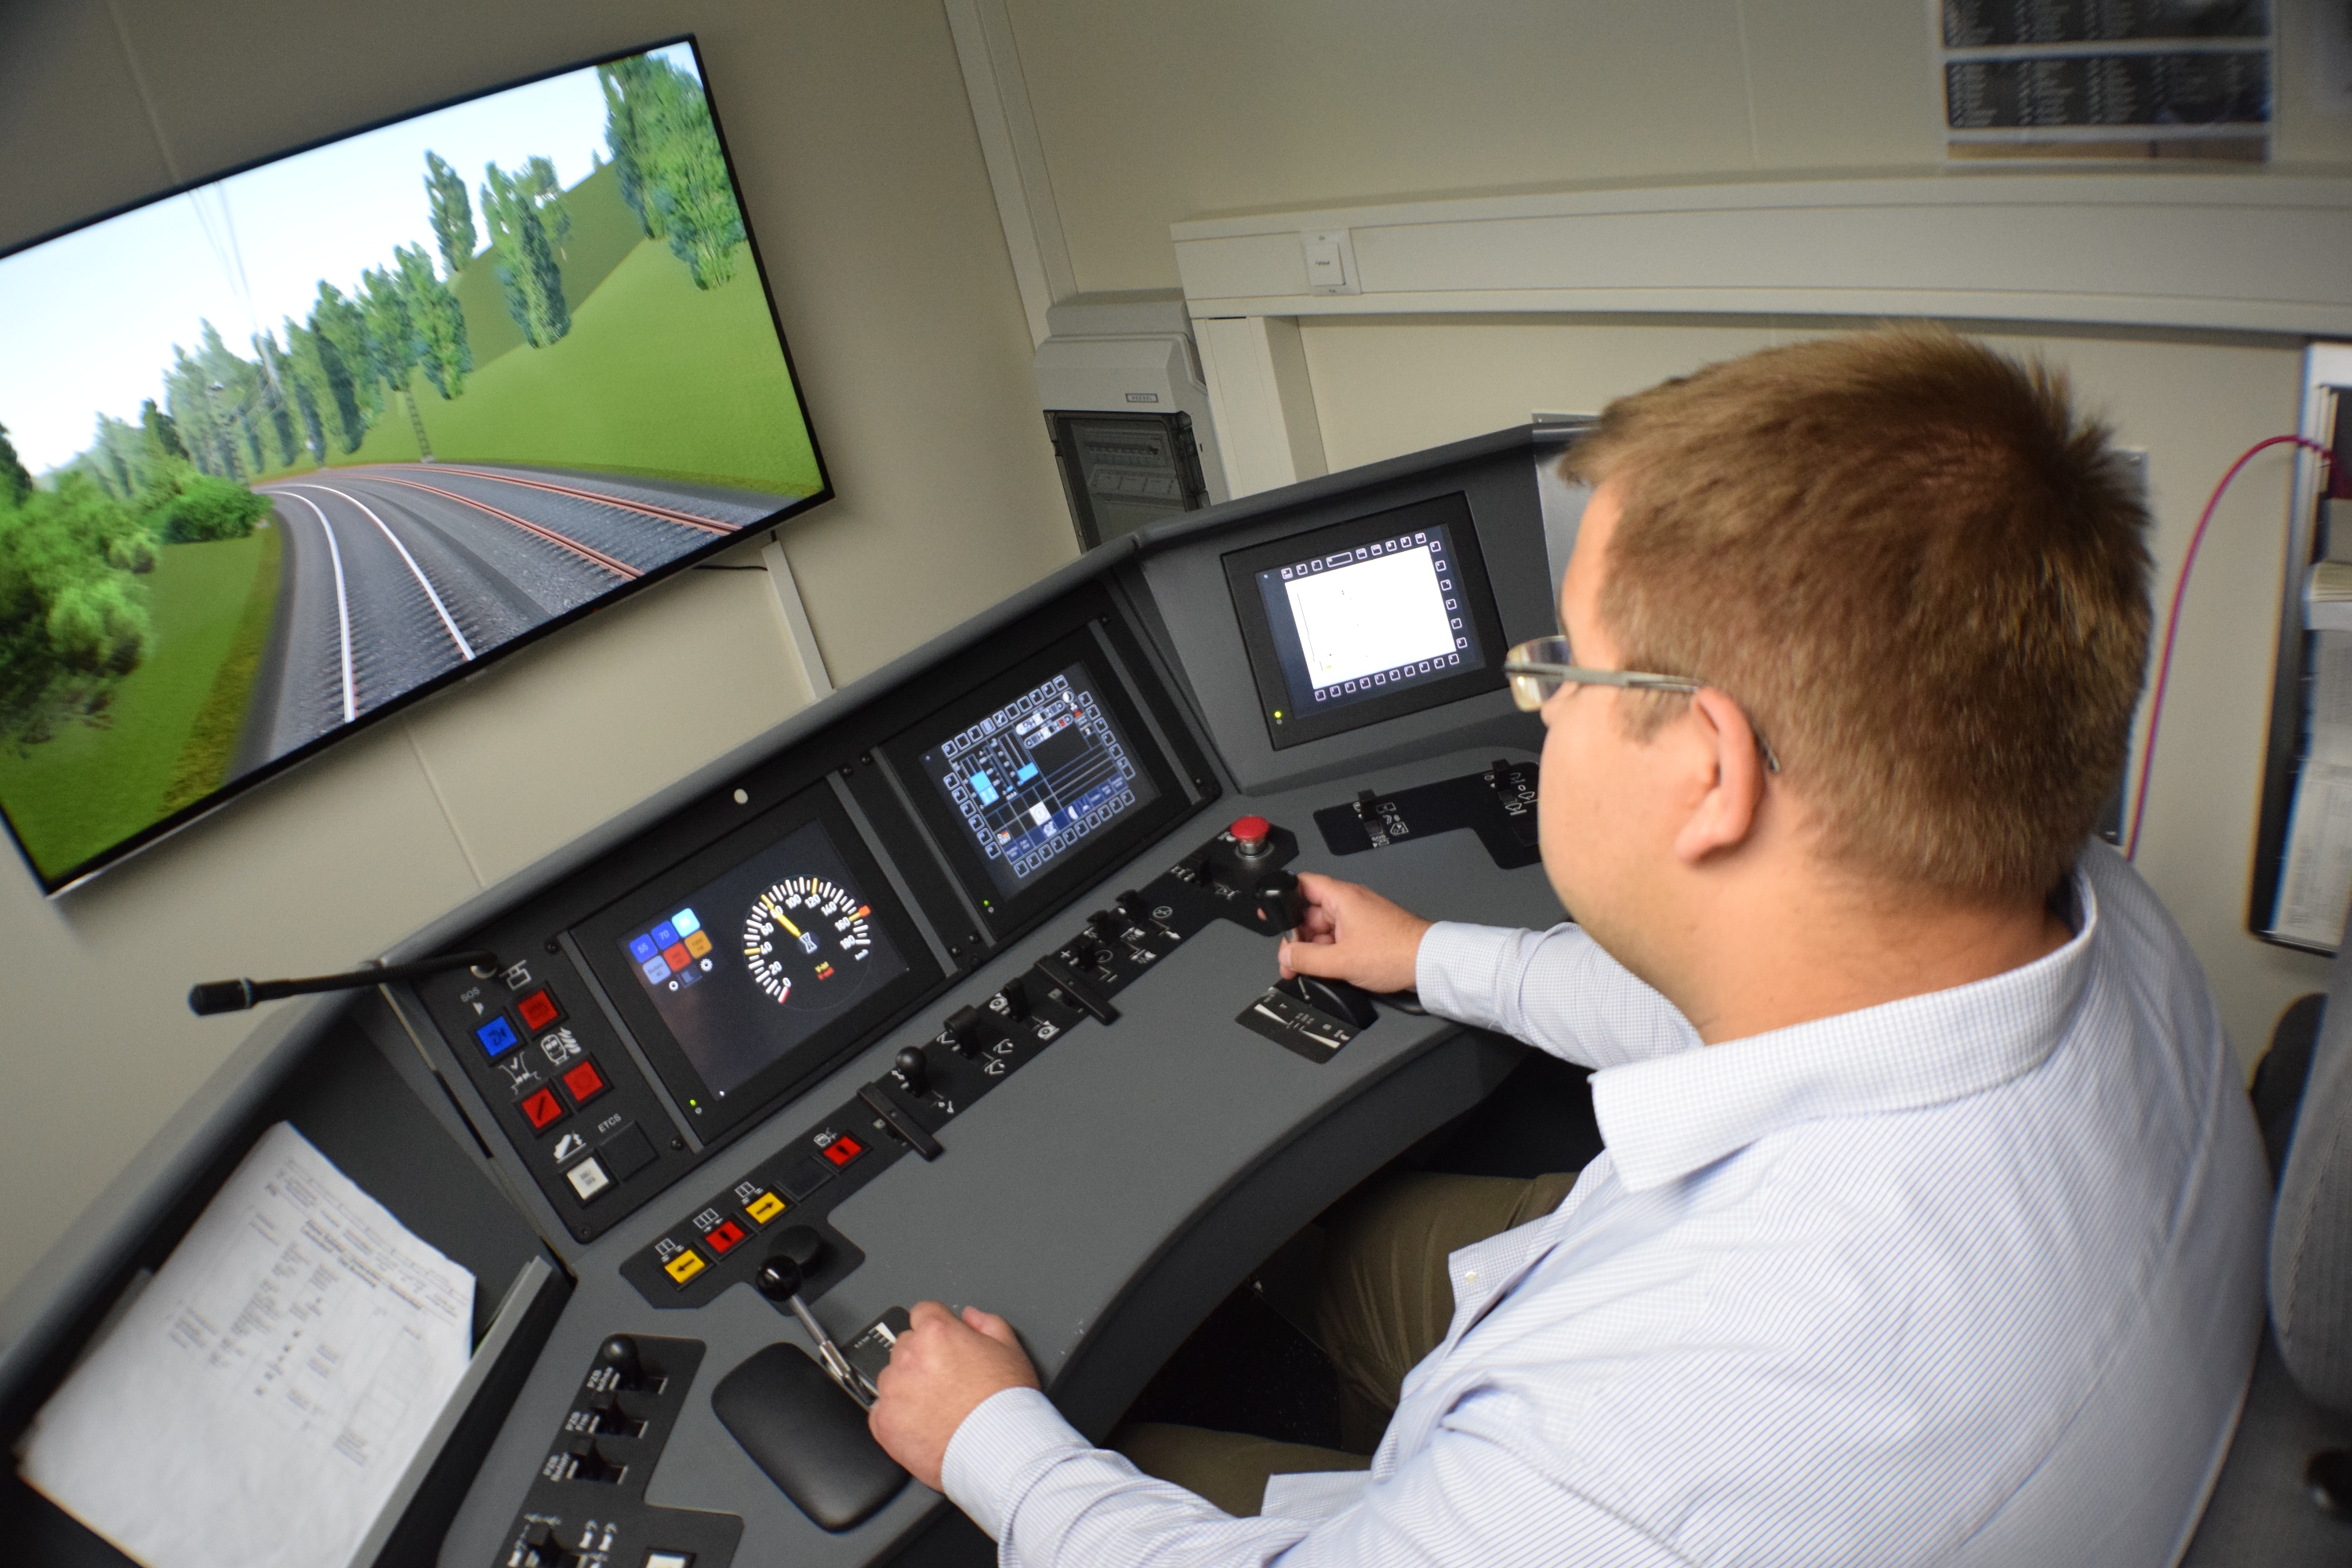 Ein Teilnehmer der Aktion bei seiner "Fahrt" im Simulator. (Foto: © Bahnblogstelle)